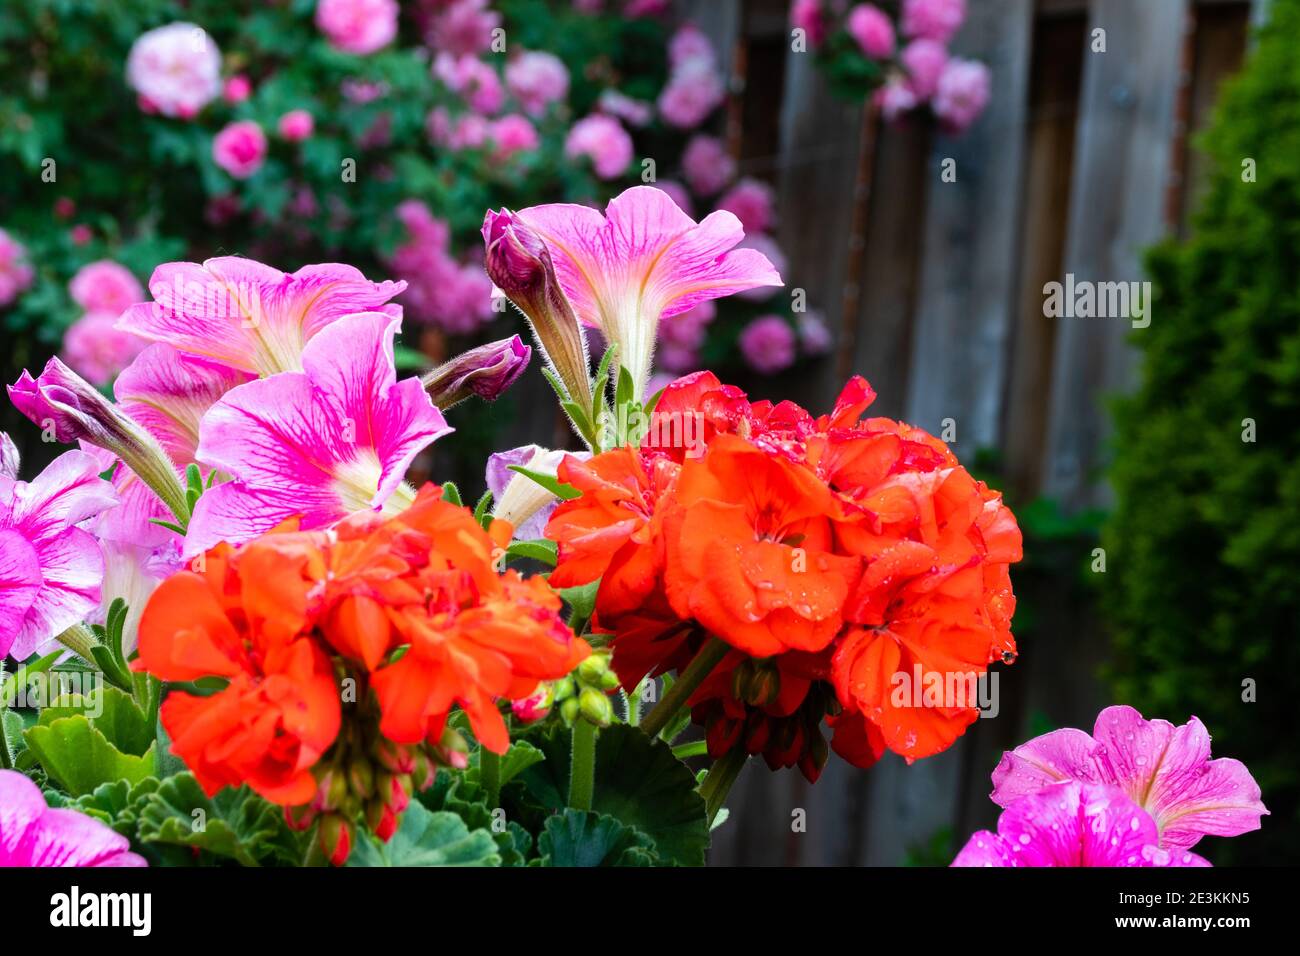 Los anuarios anaranjados brillantes tratan de robar la atención de las flores rosadas Foto de stock